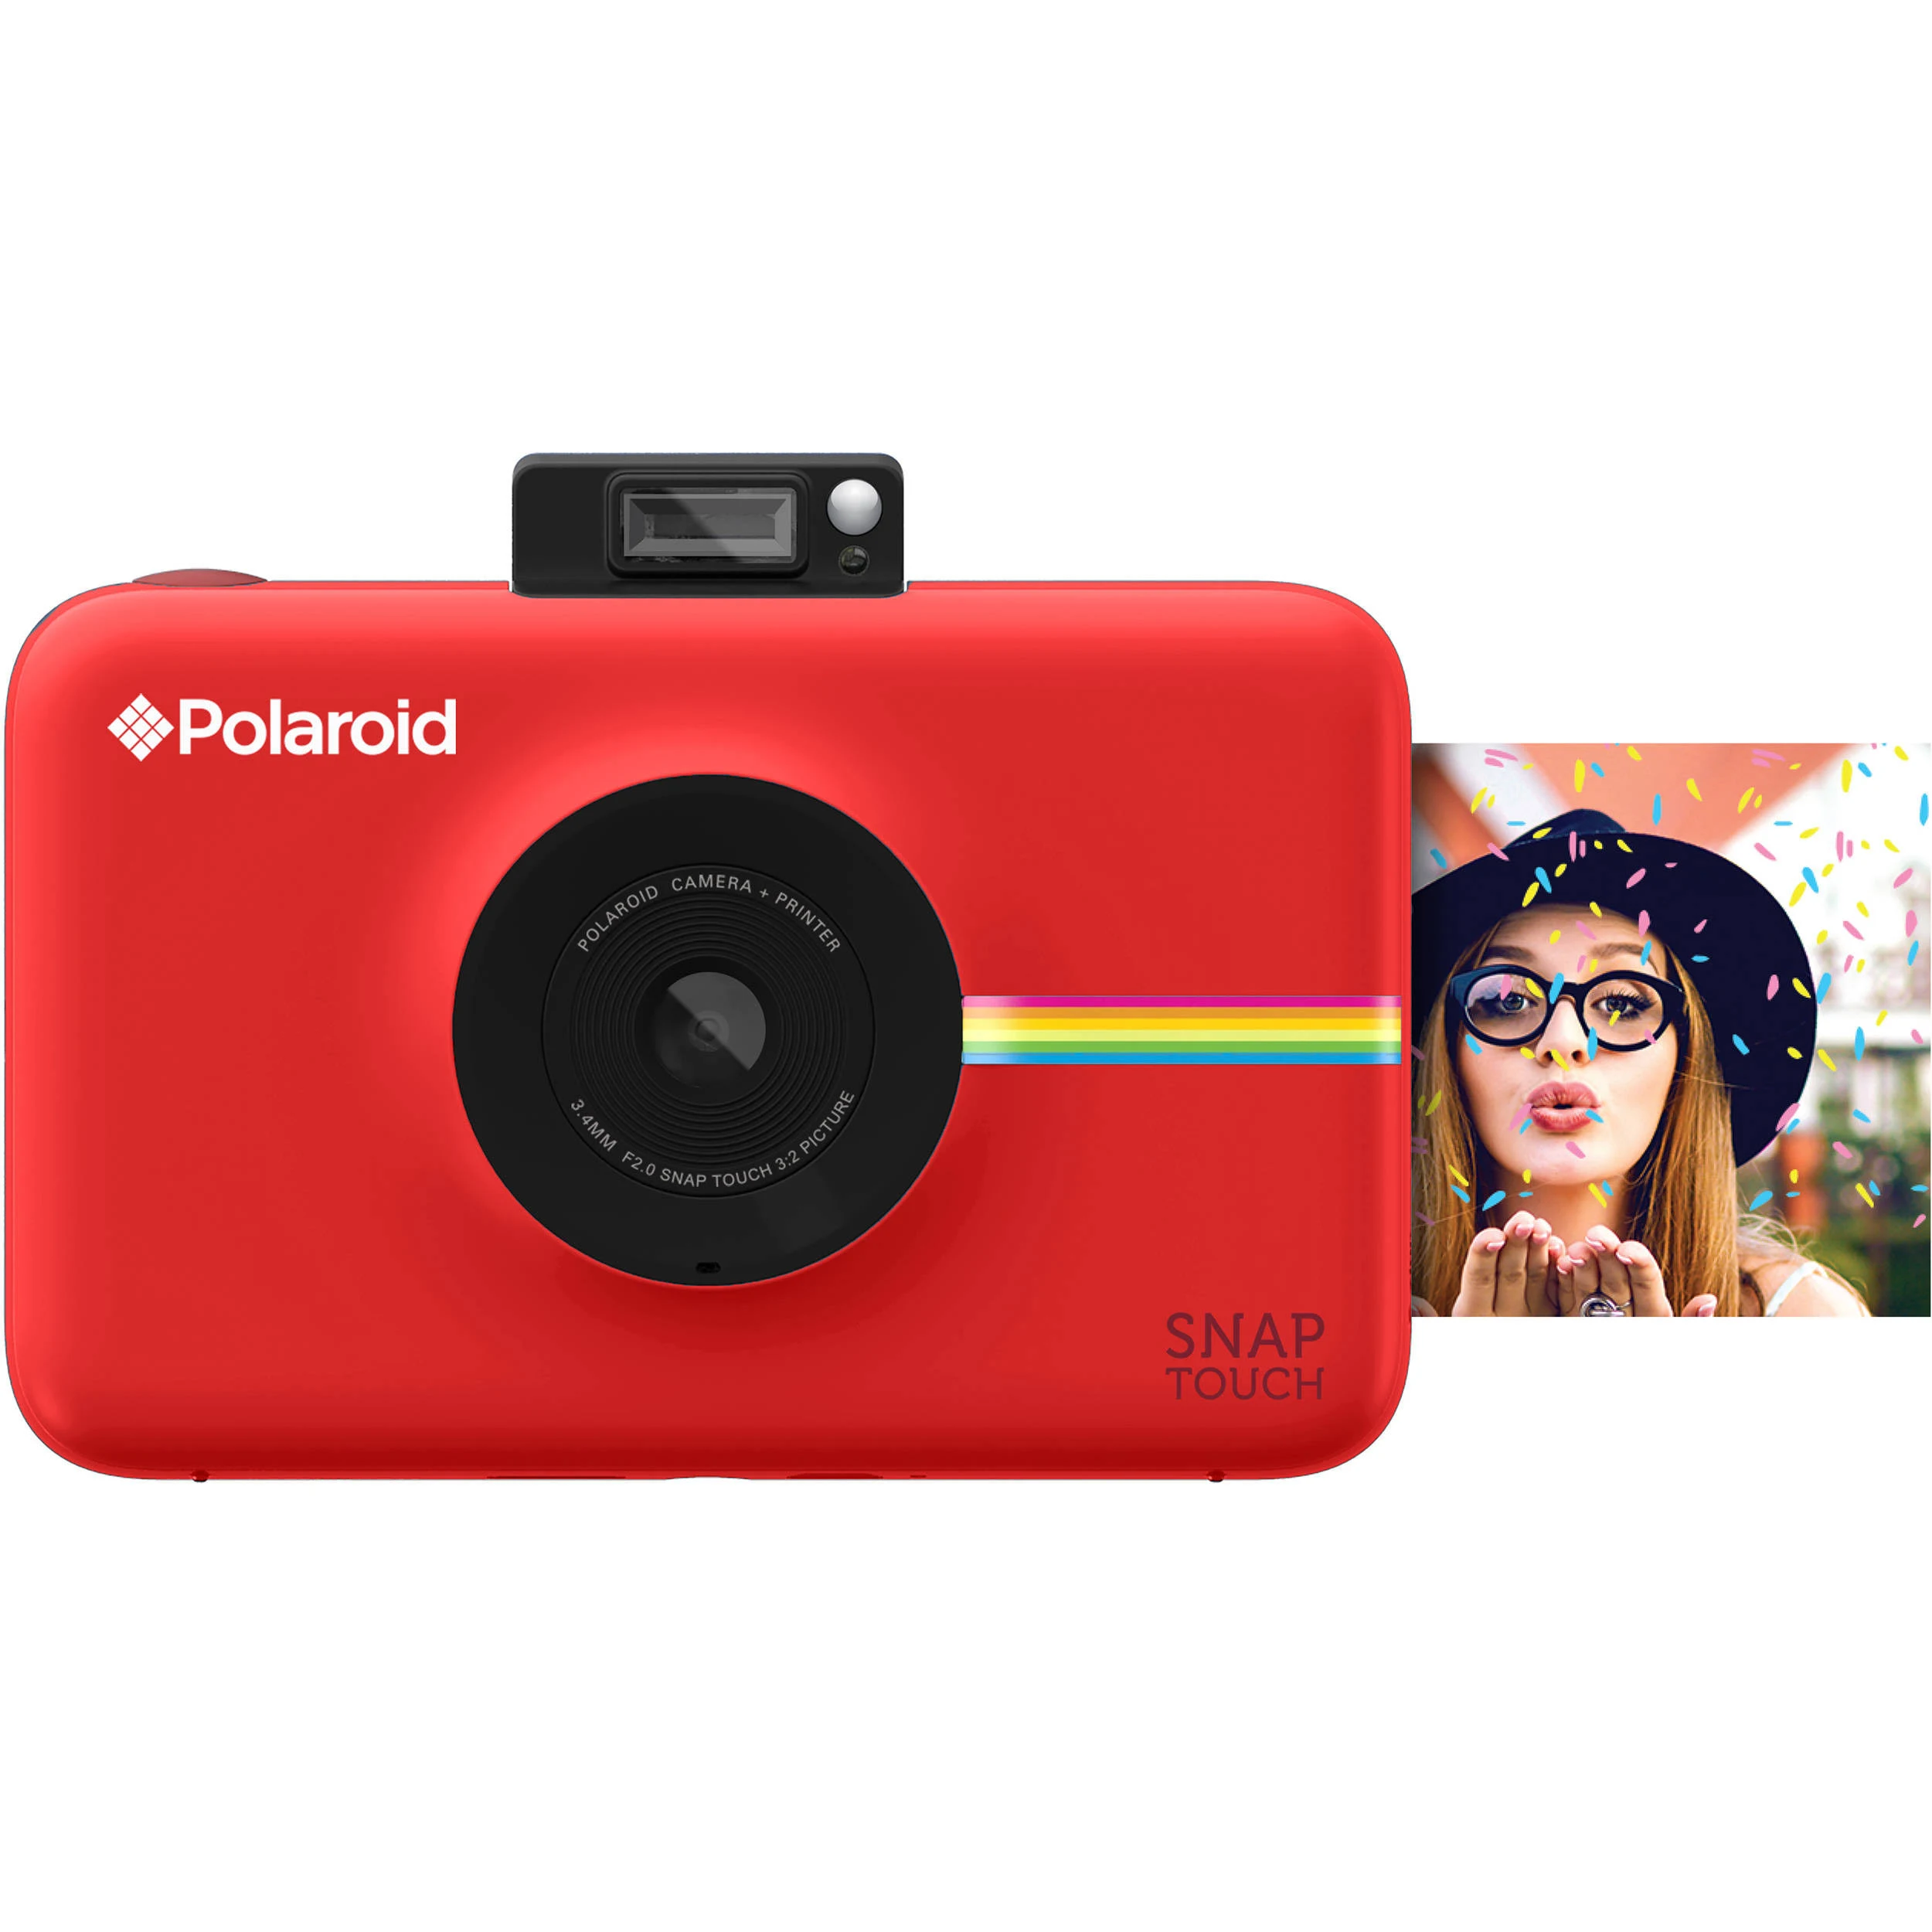 Polaroid كاميرا رقمية بطباعة فورية تعمل باللمس مع شاشة LCD (حمراء) مع تقنية الطباعة Zink Zero Ink